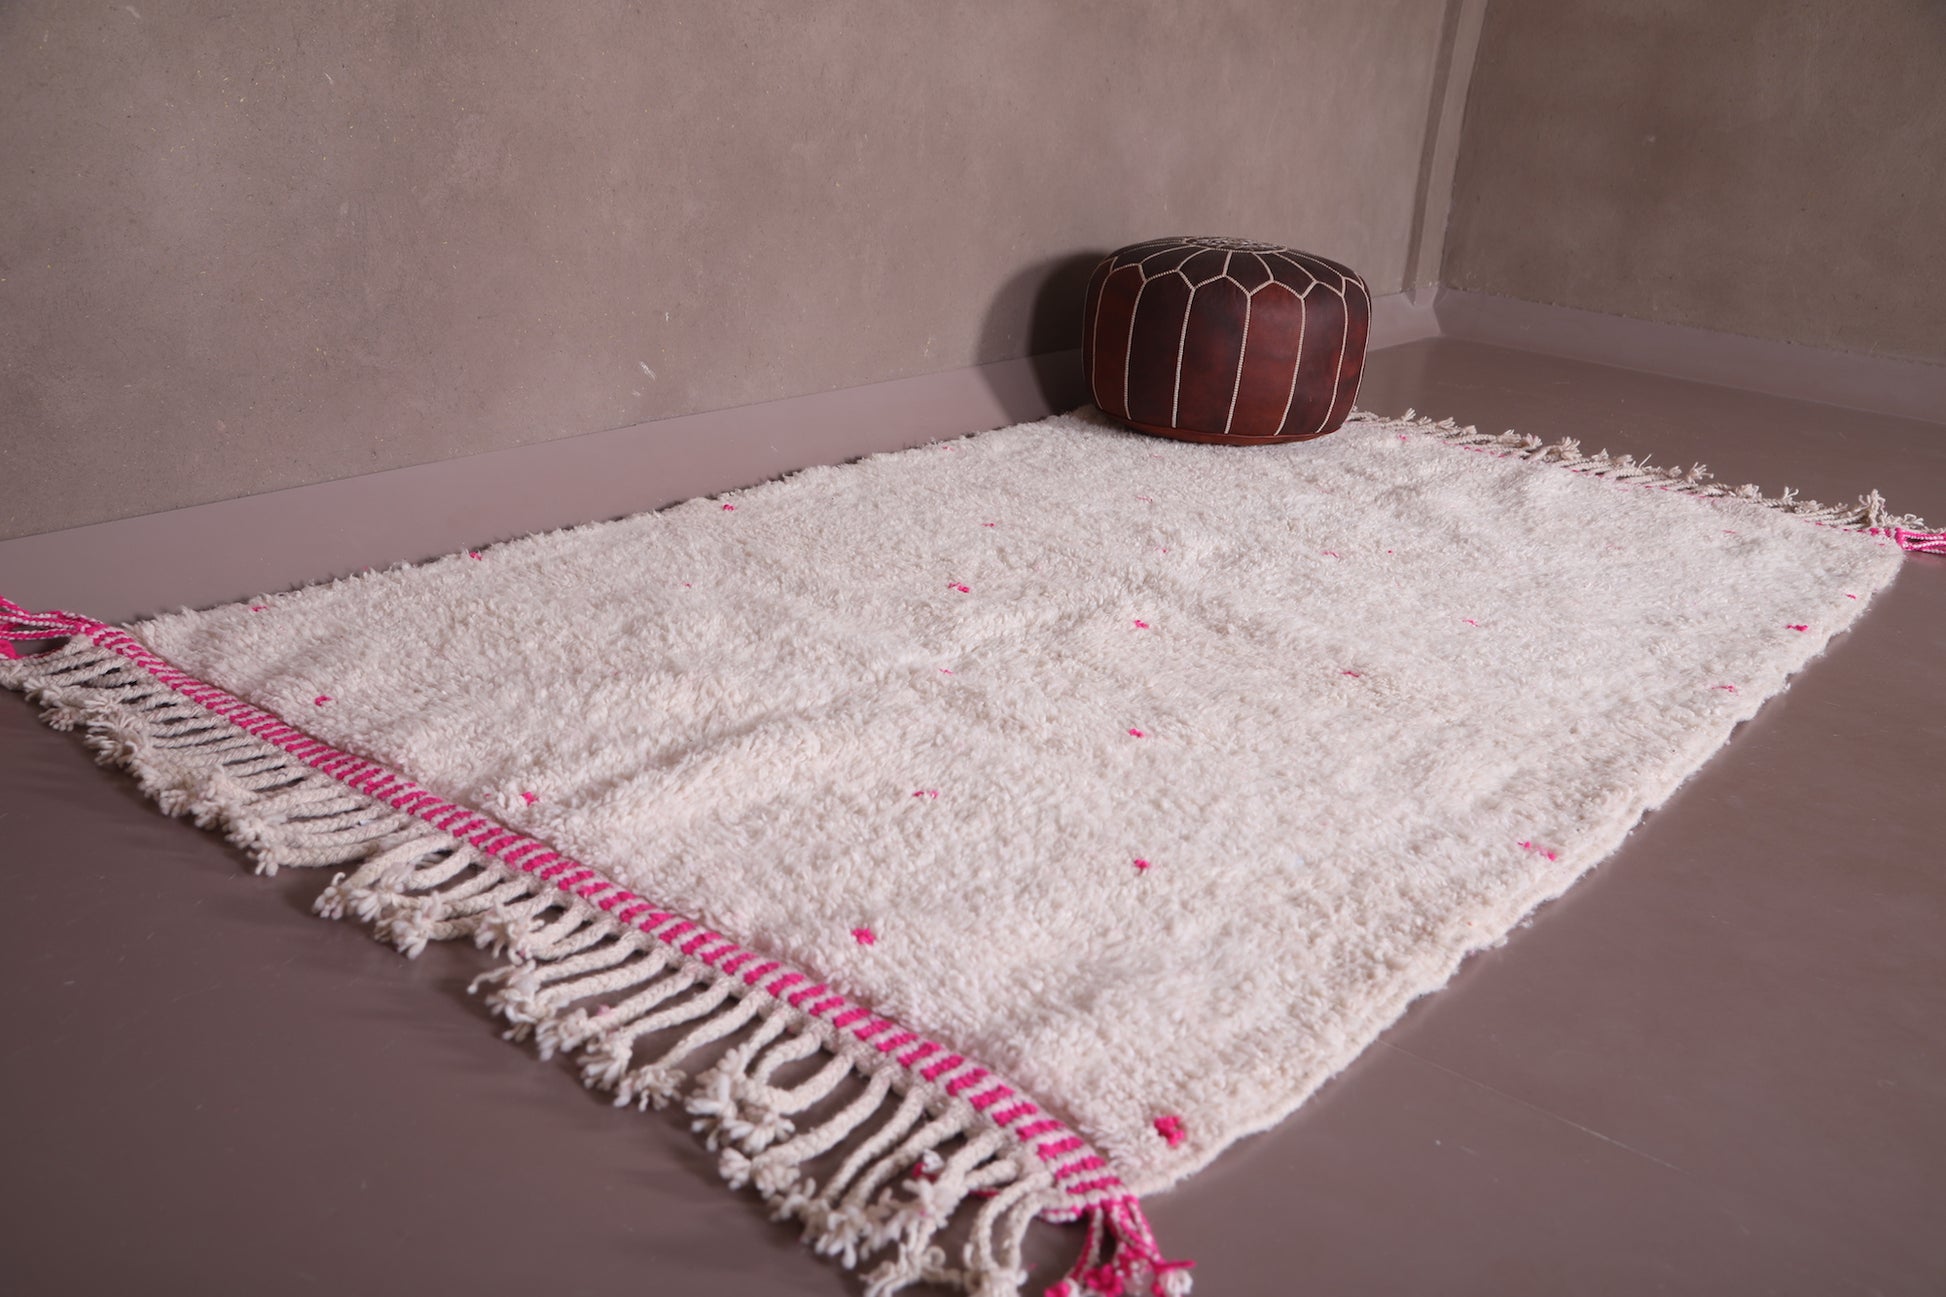 Handmade custom Moroccan rug - wool berber carpet